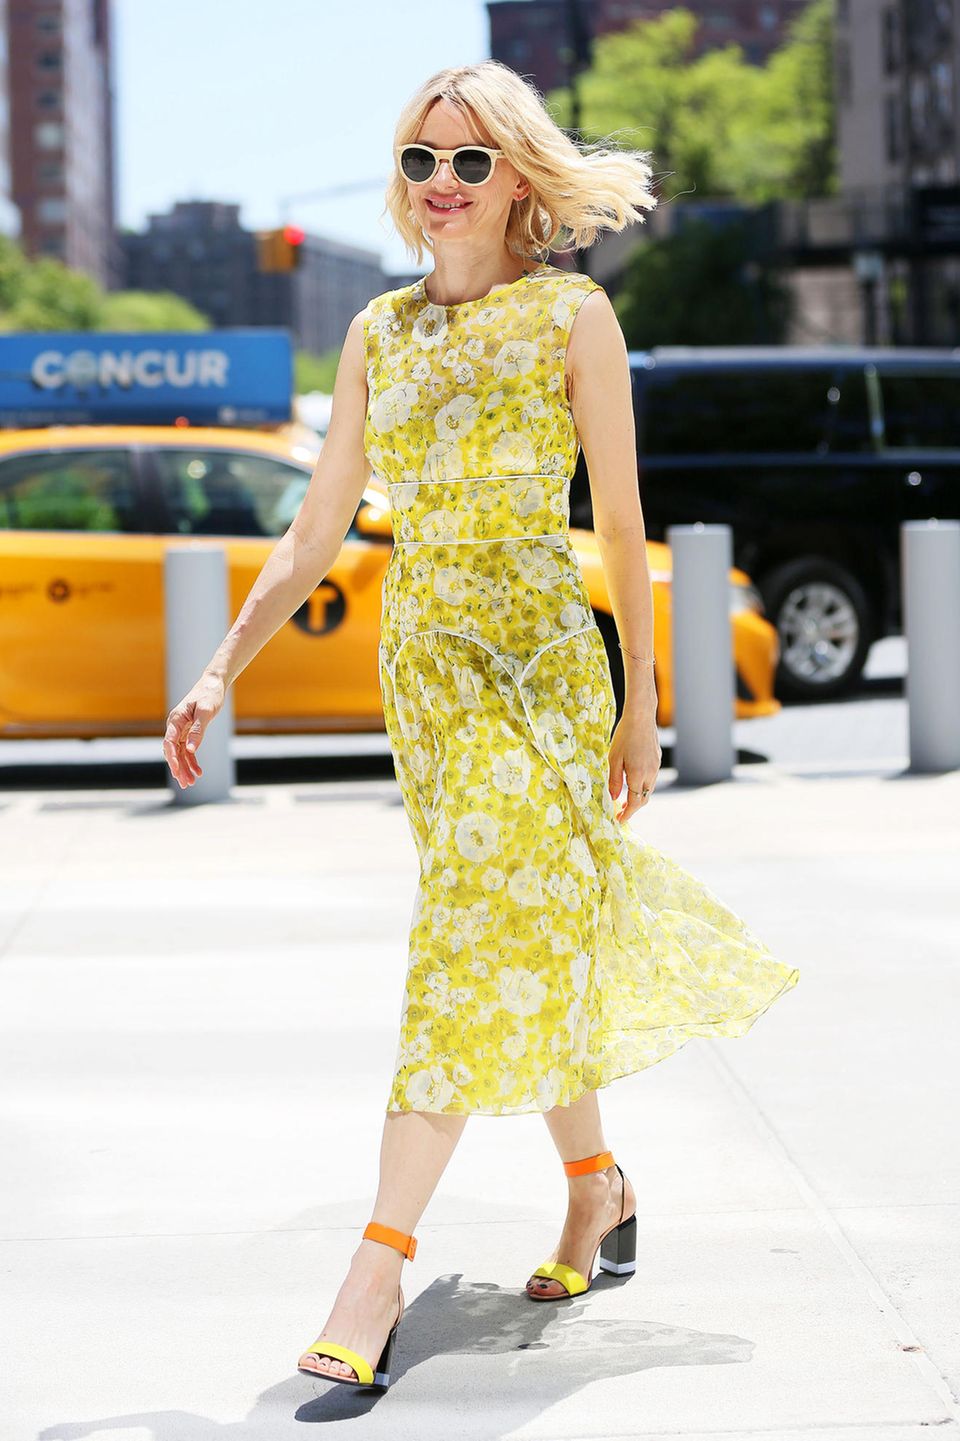 Endlich ist der Sommer Da! Und Naomi Watts feiert ihn in New York mit diesem strahlend gelben Blumenkleid und farblich toll passenden High Heels.